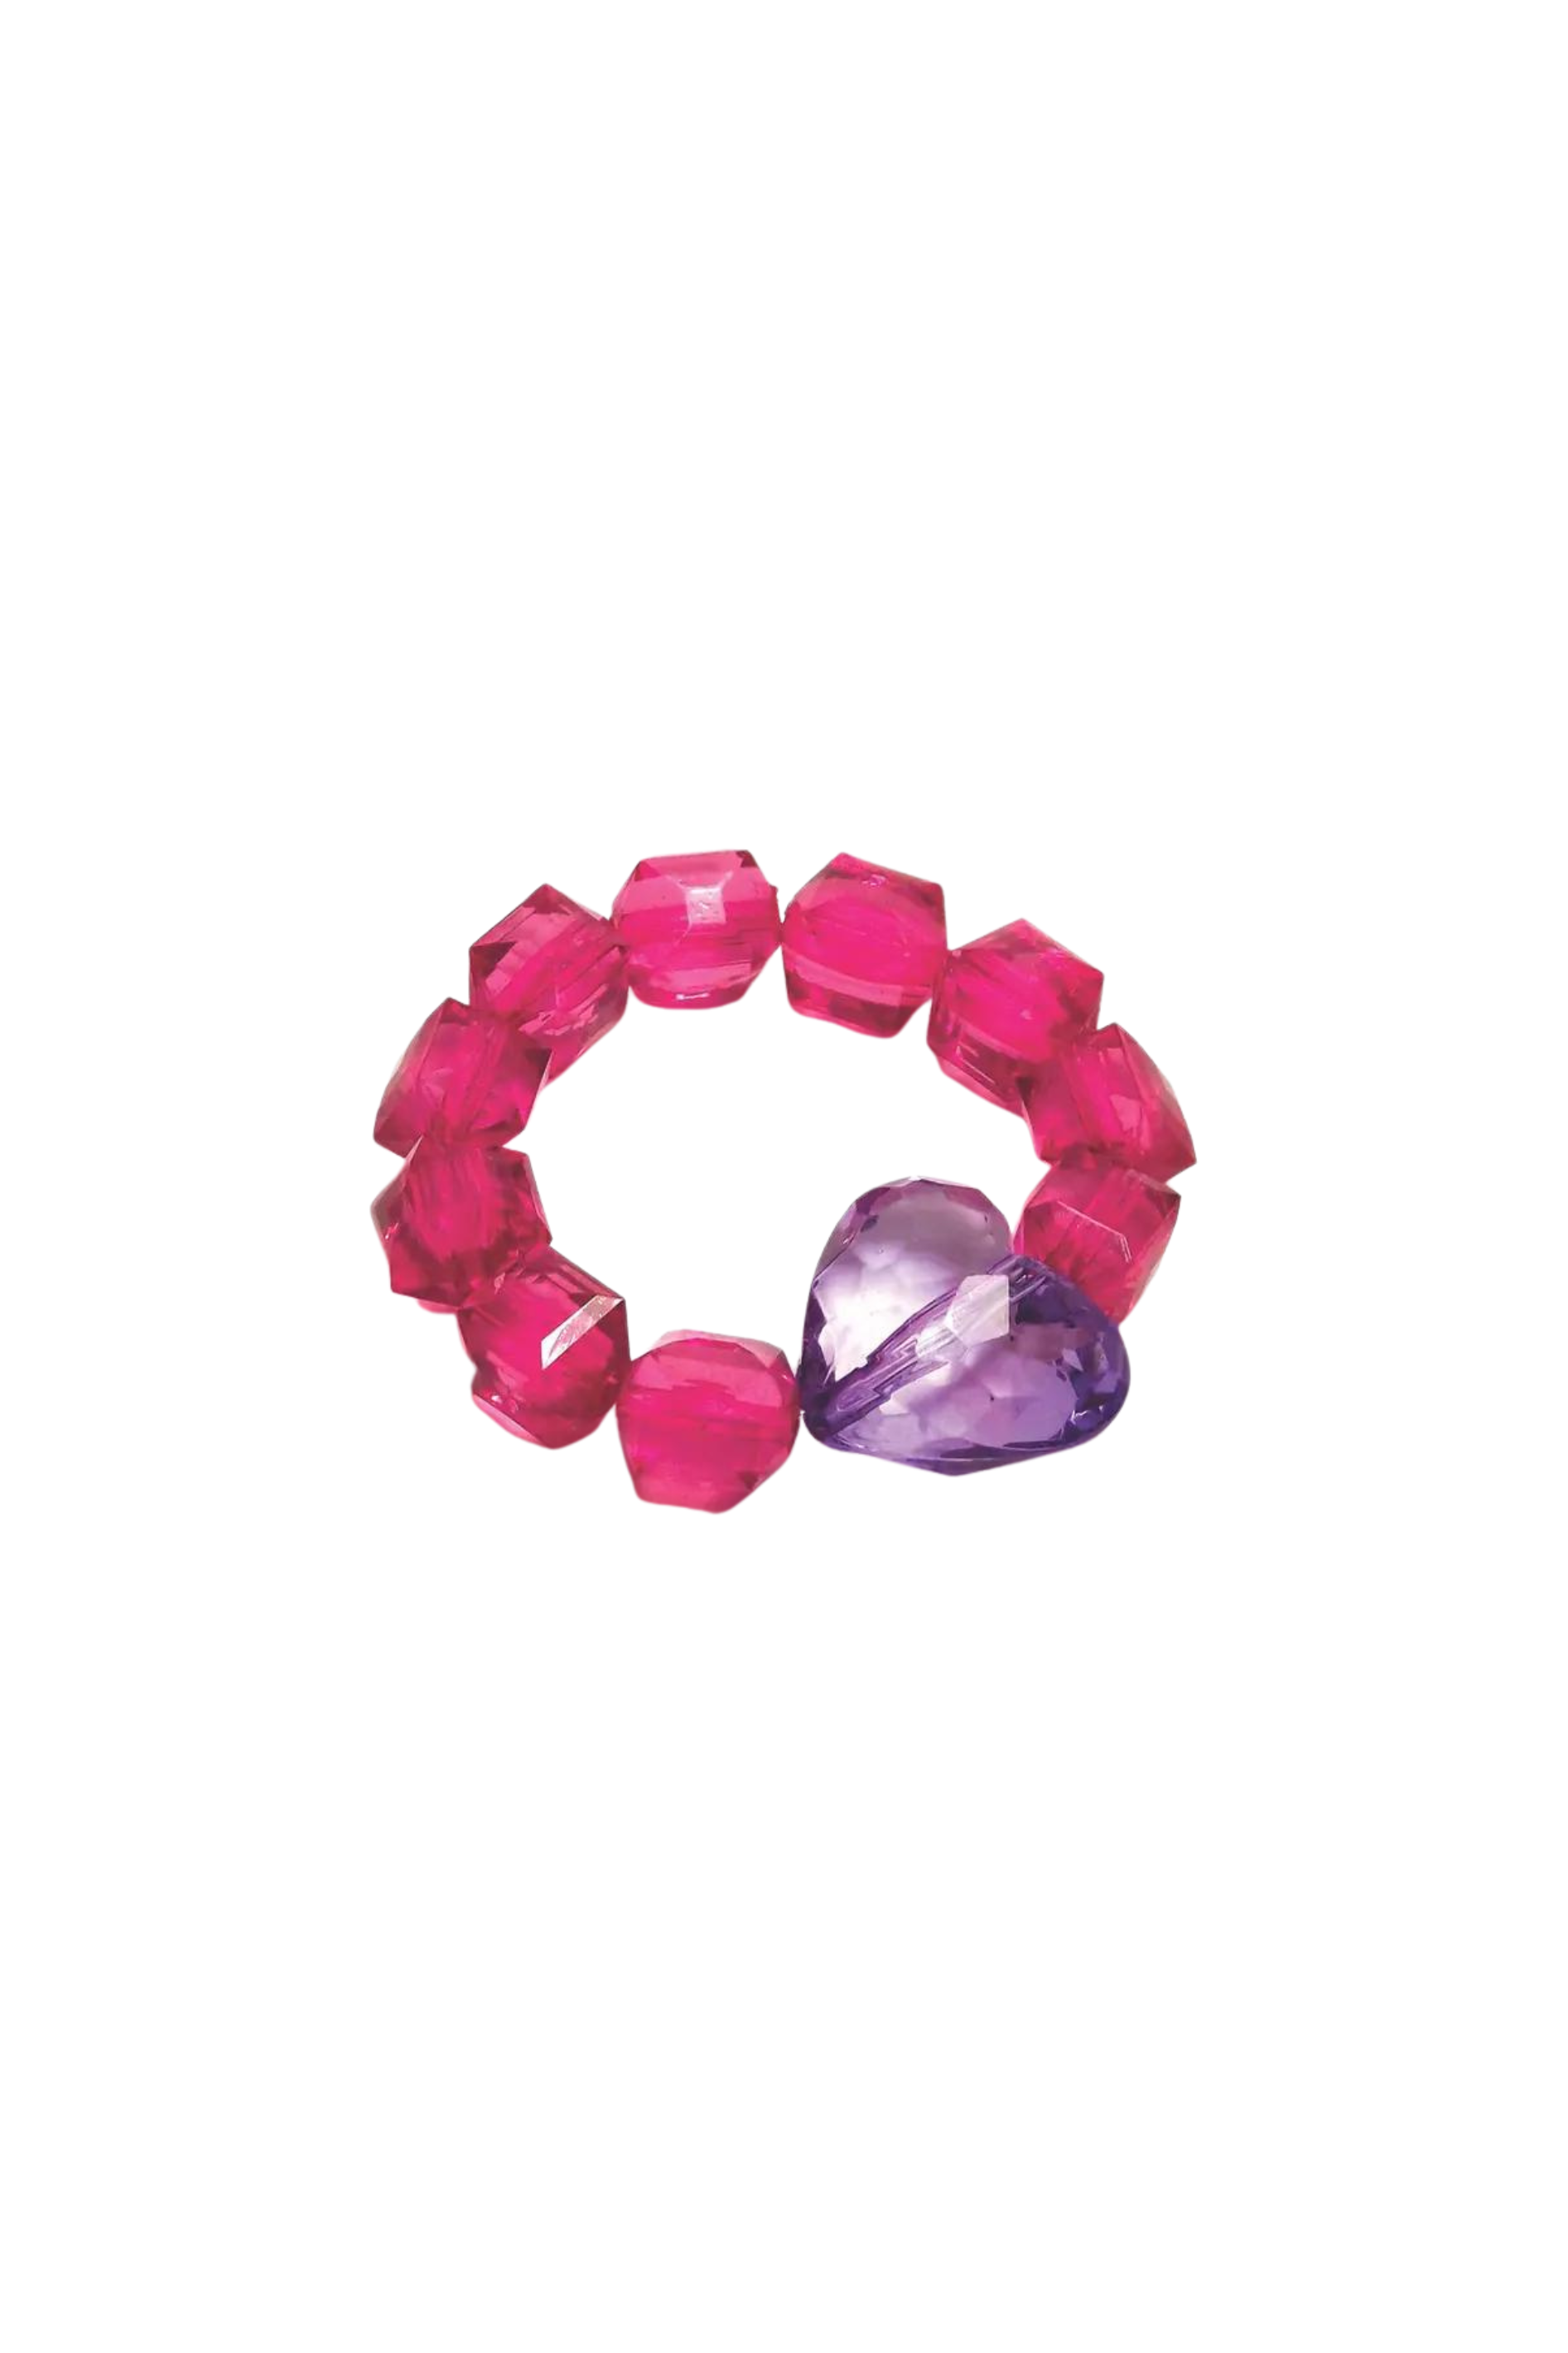 Bottle Blond - Heart Rock Candy Bracelet - Pink/Purple – Dottie Doolittle